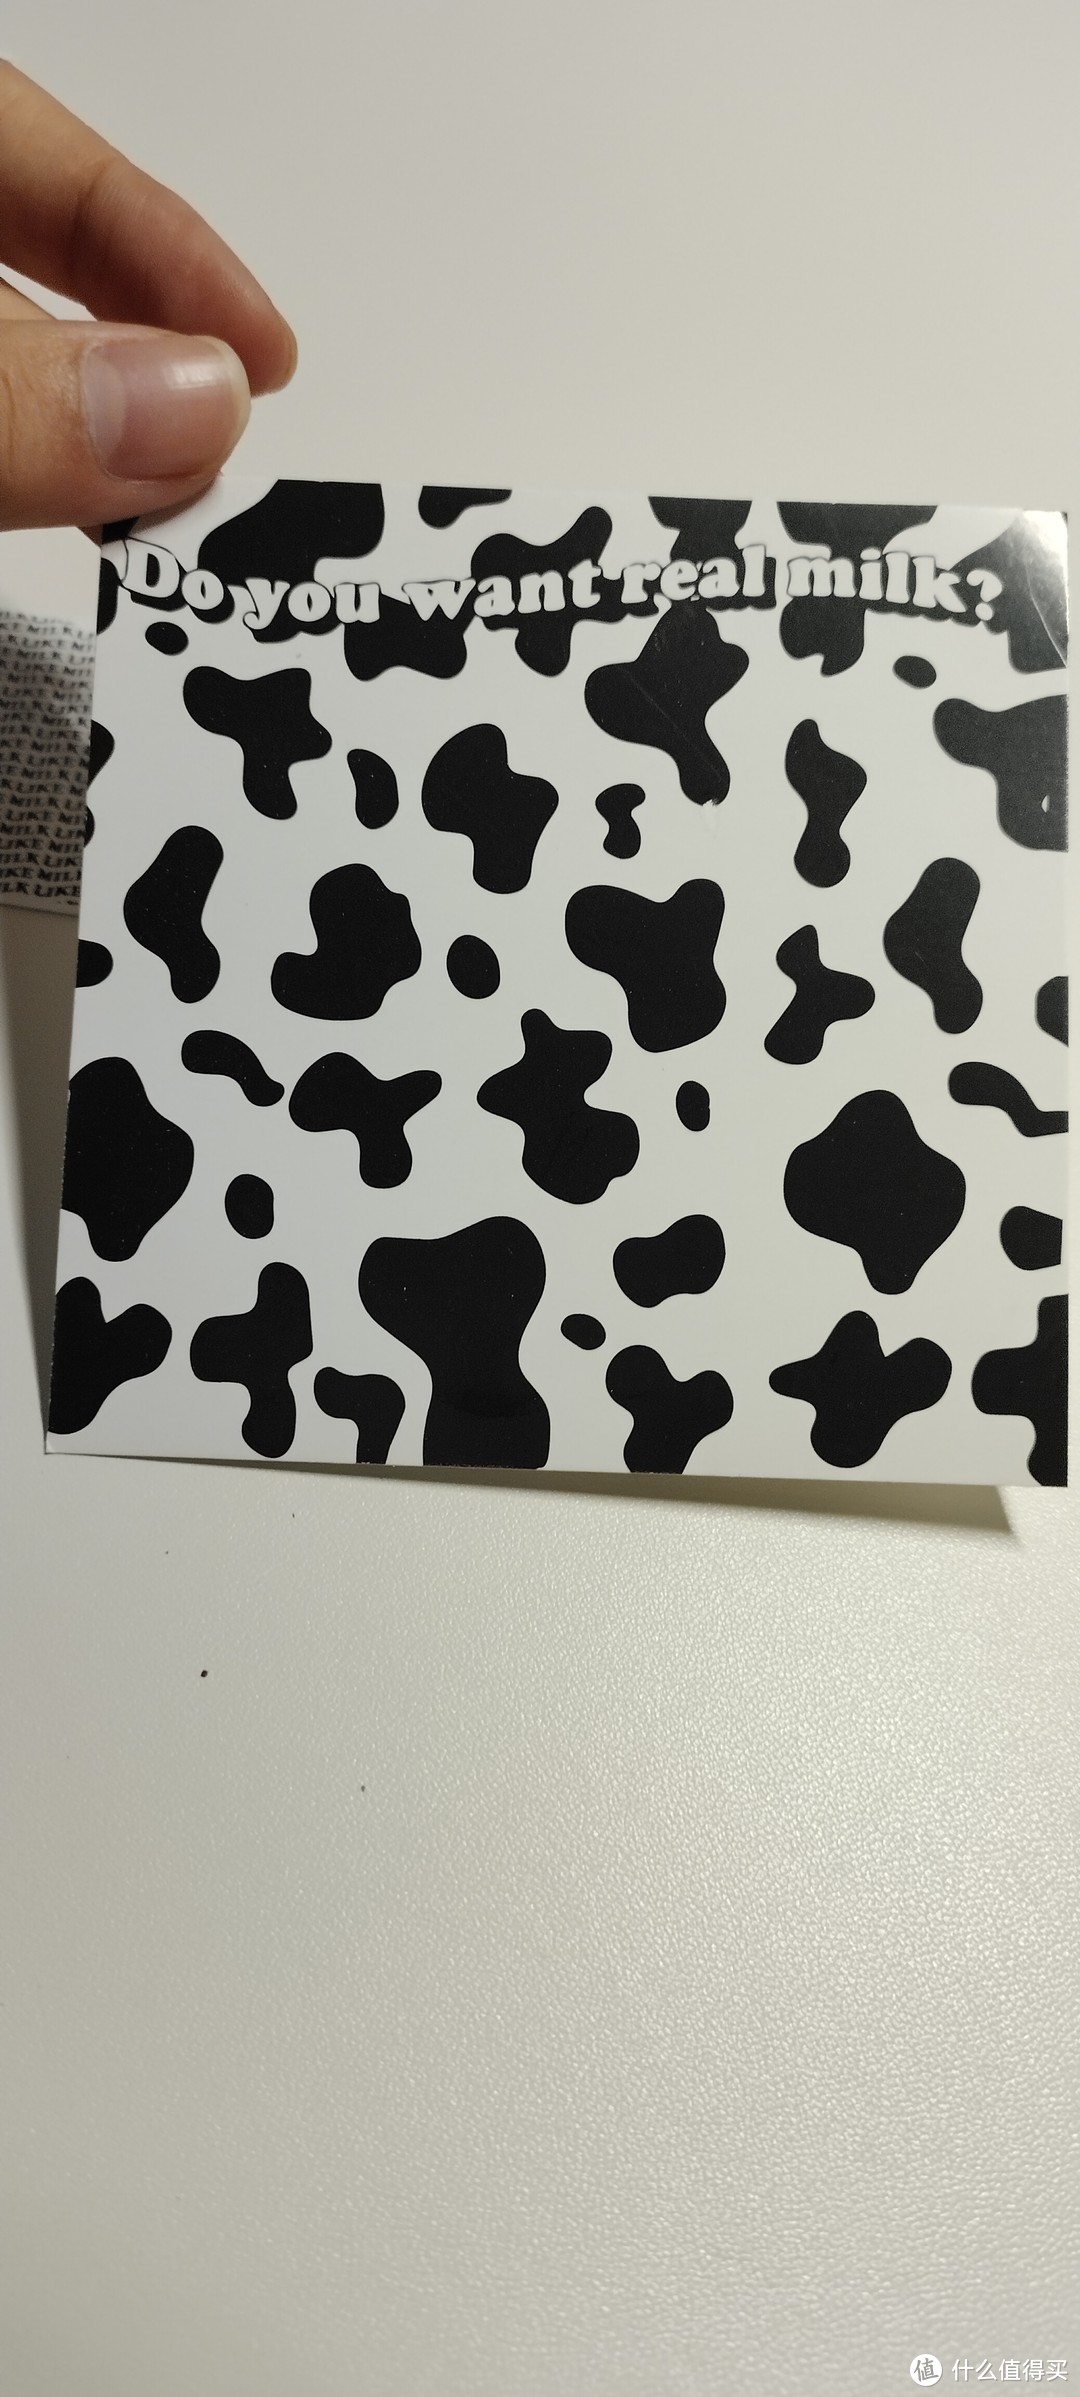 我的奶牛系列🐄贴纸 ，瞬间get到了ins感的贴纸，就问谁不喜欢啊。